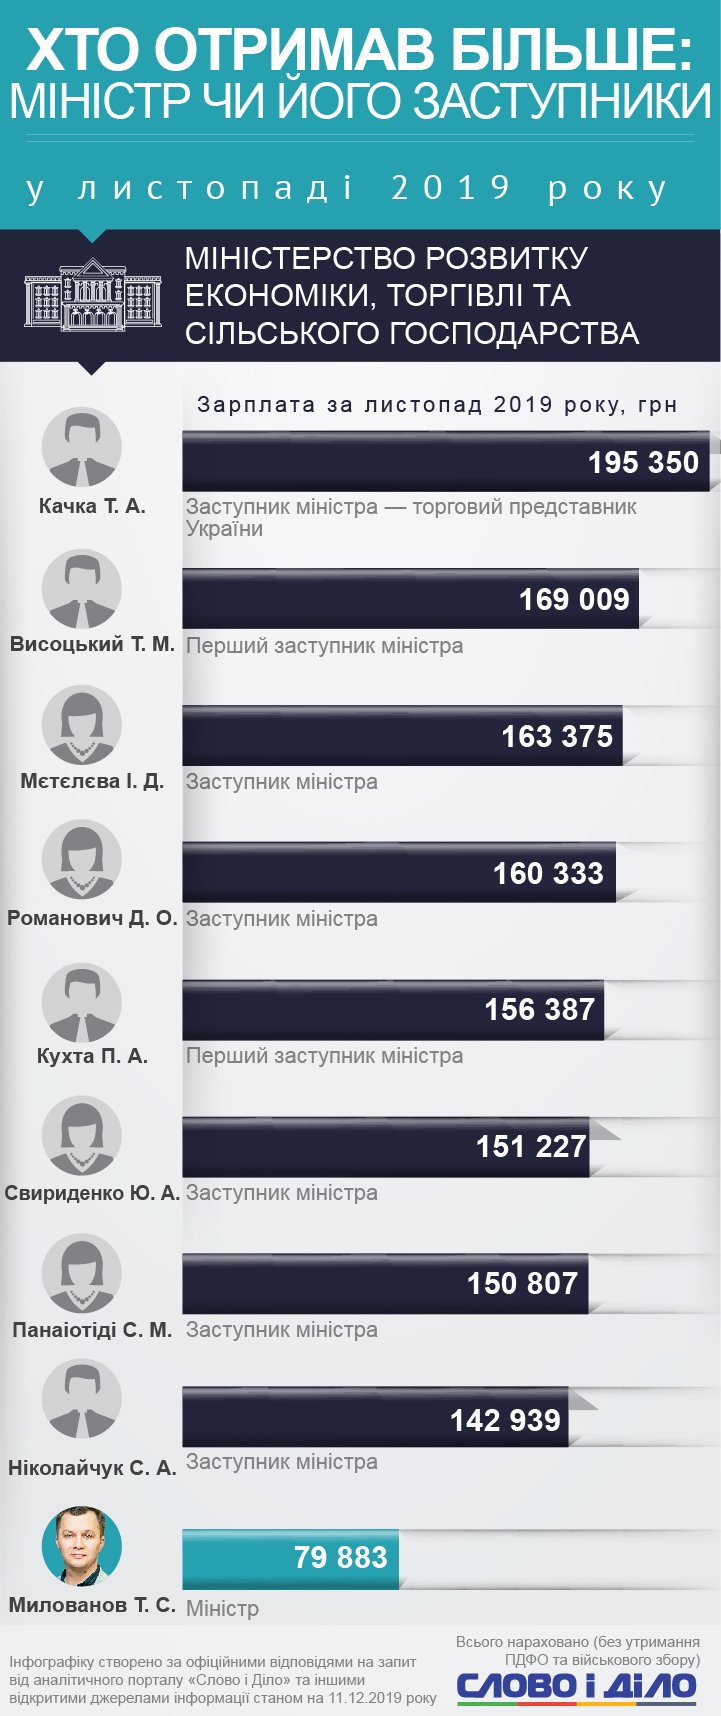 Арсен Аваков заробив у листопаді близько 97 тисяч гривень, Тимофій Милованов – 80 тисяч, Дмитро Дубілет – 16 тисяч.